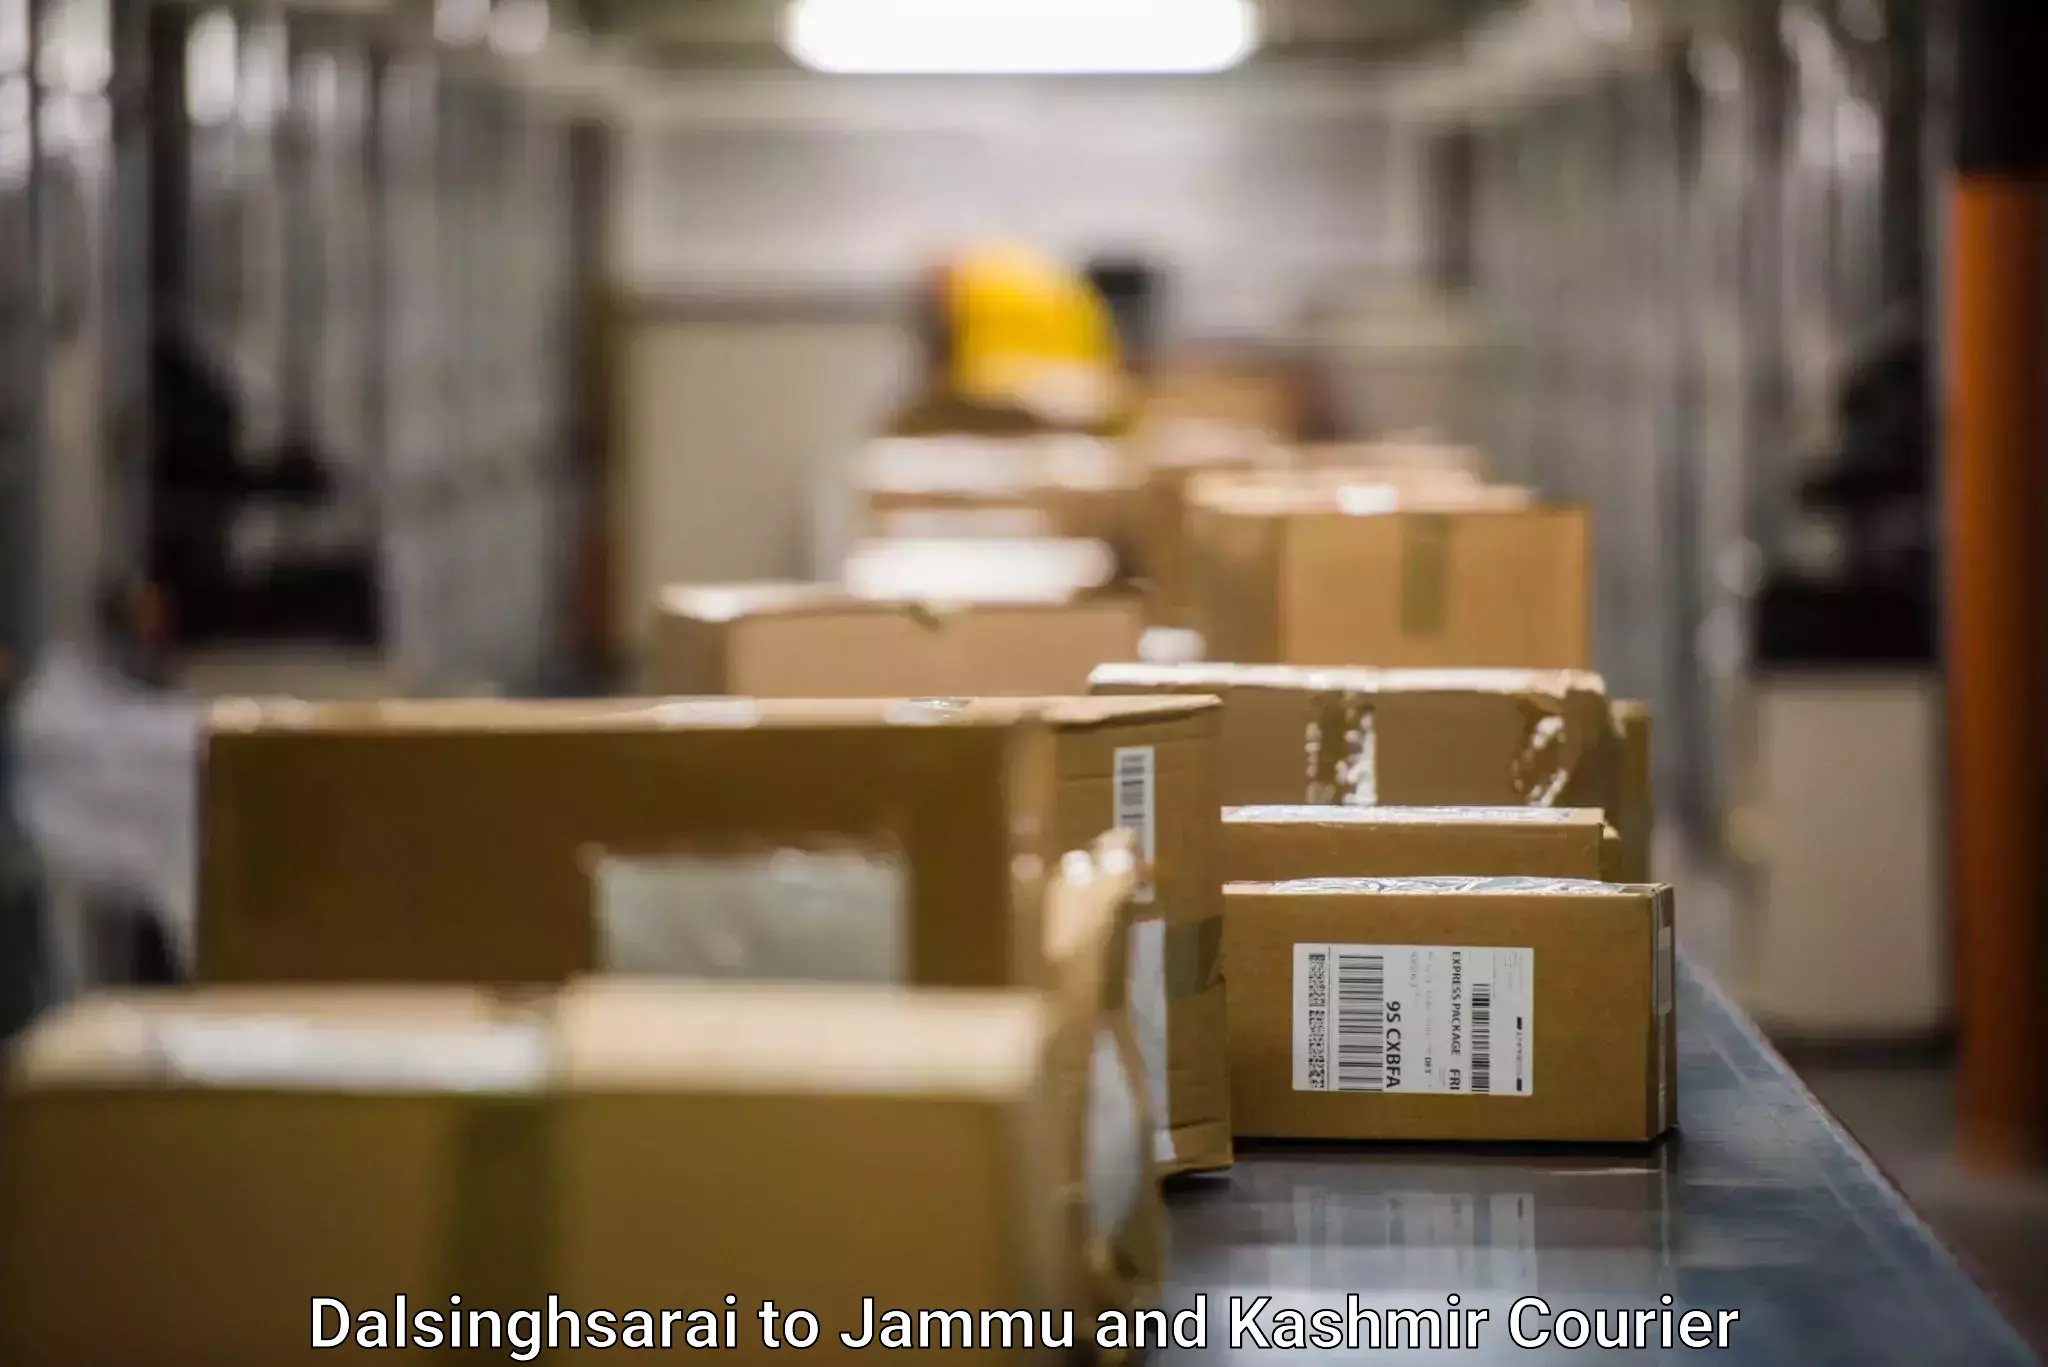 Cargo delivery service Dalsinghsarai to Baramulla